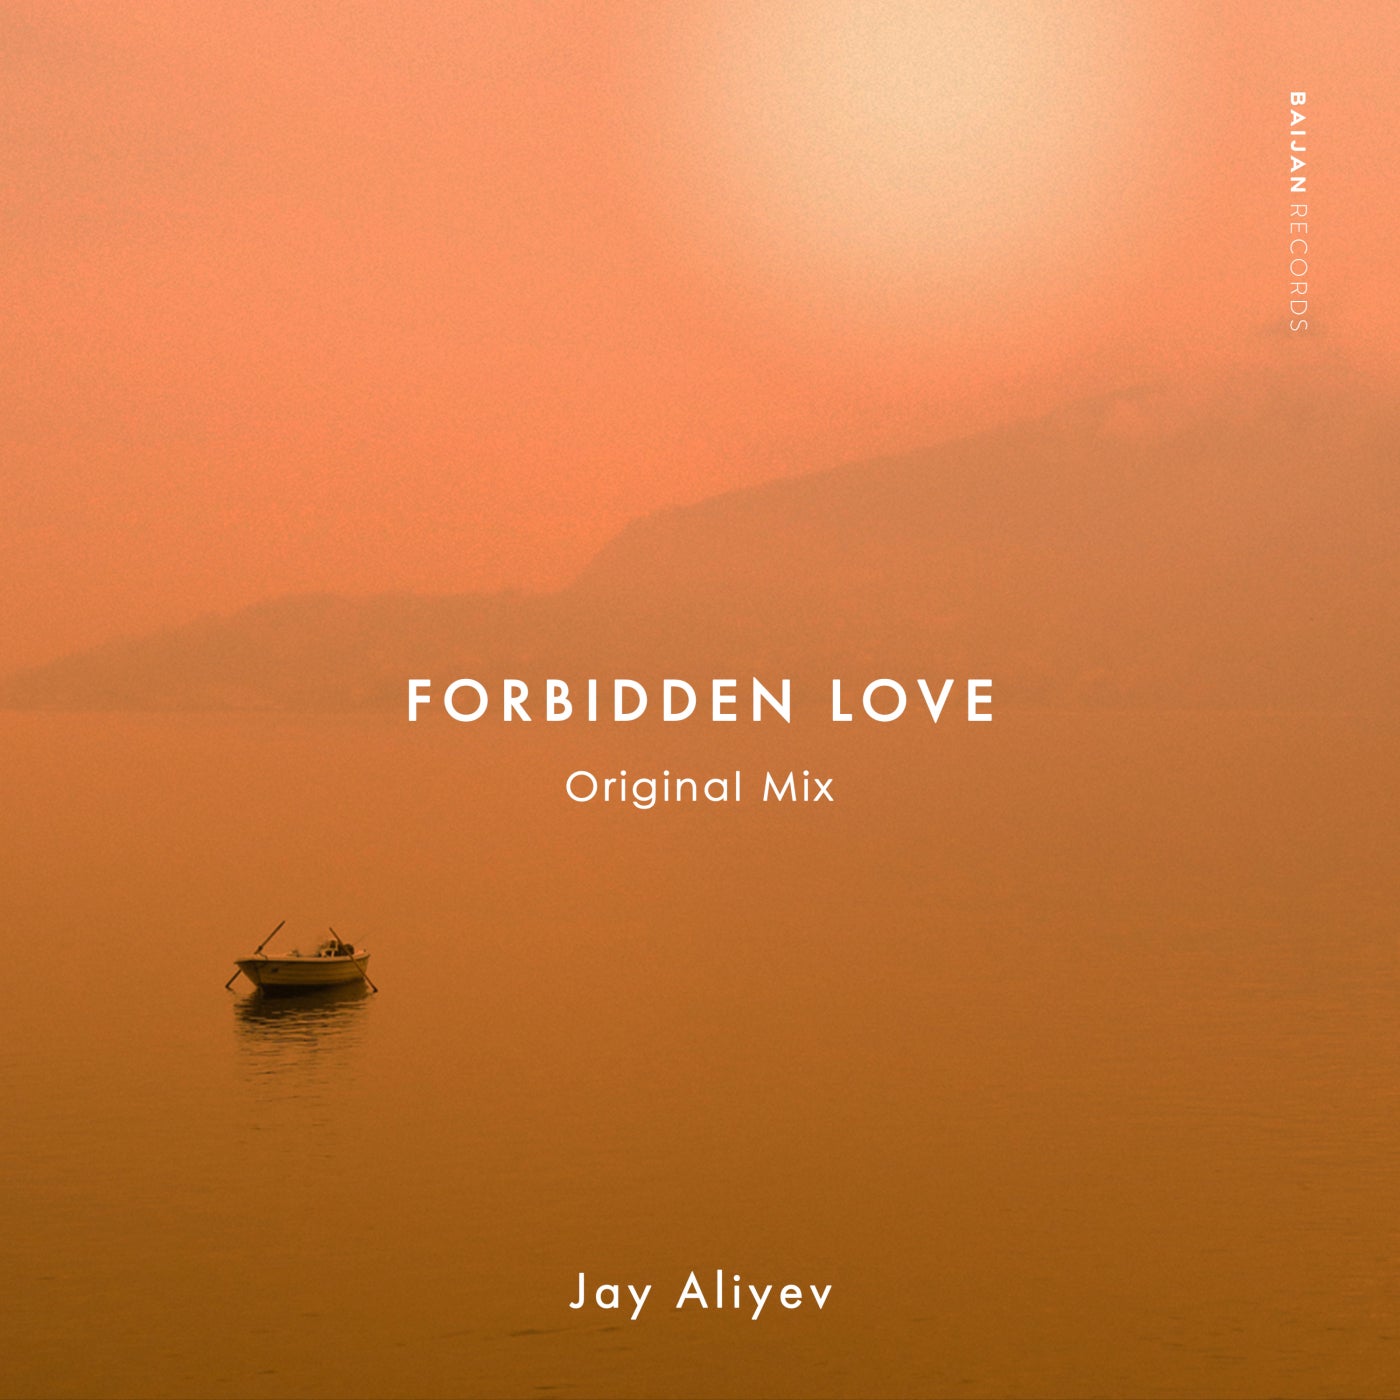 Jay Aliyev - Forbidden Love (Original Mix)